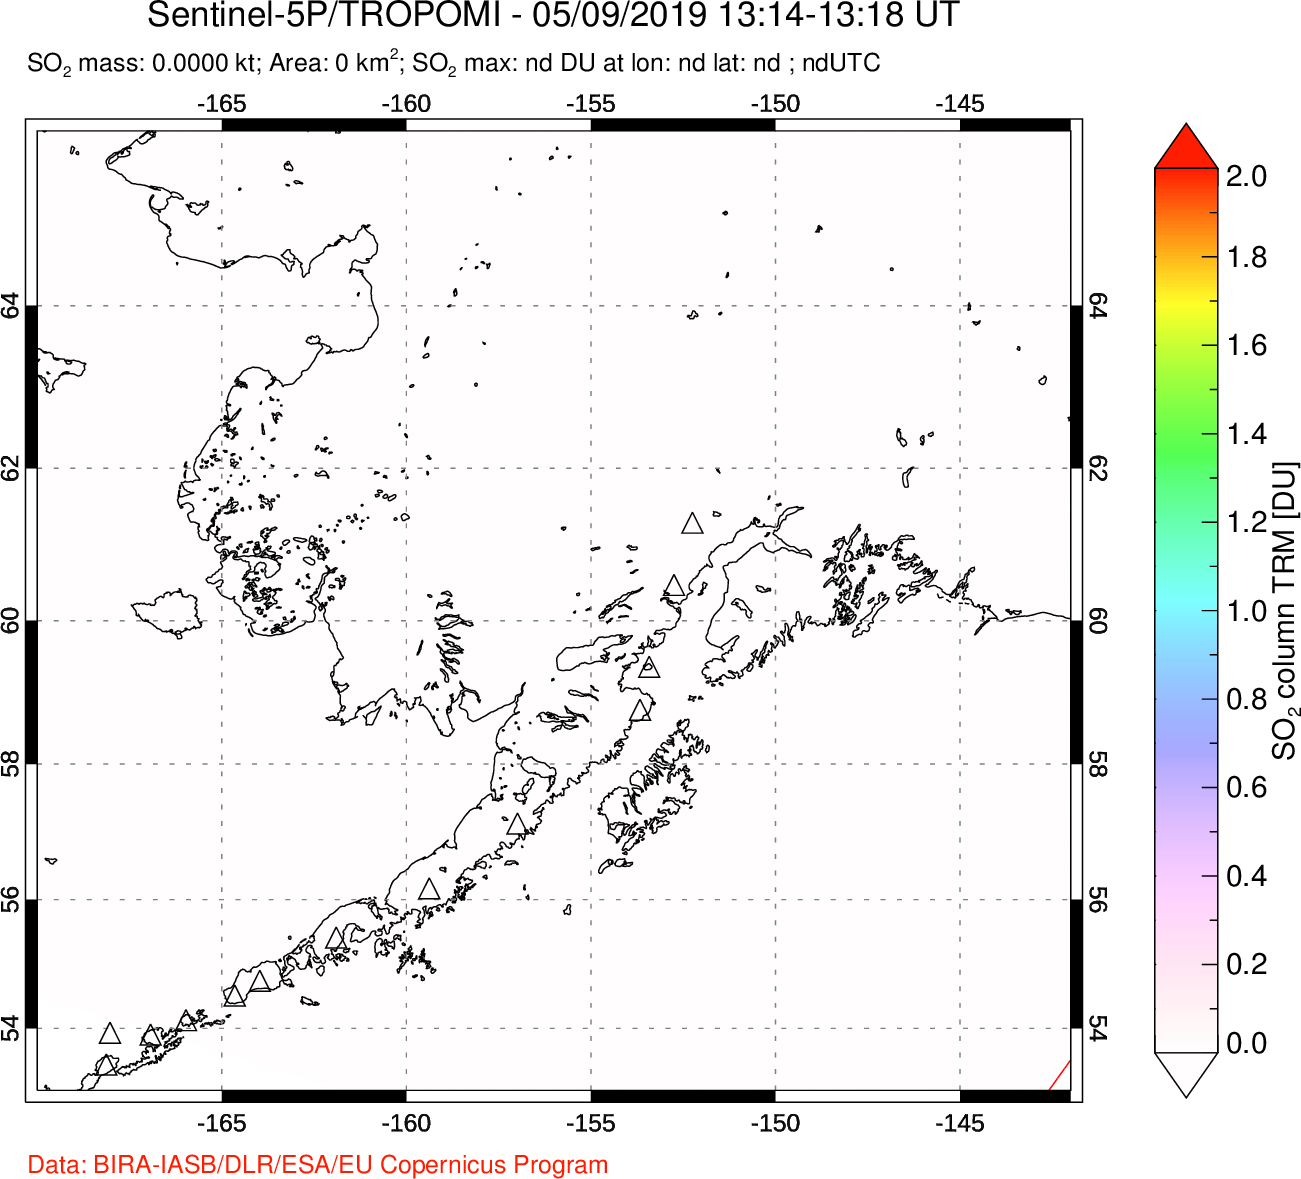 A sulfur dioxide image over Alaska, USA on May 09, 2019.